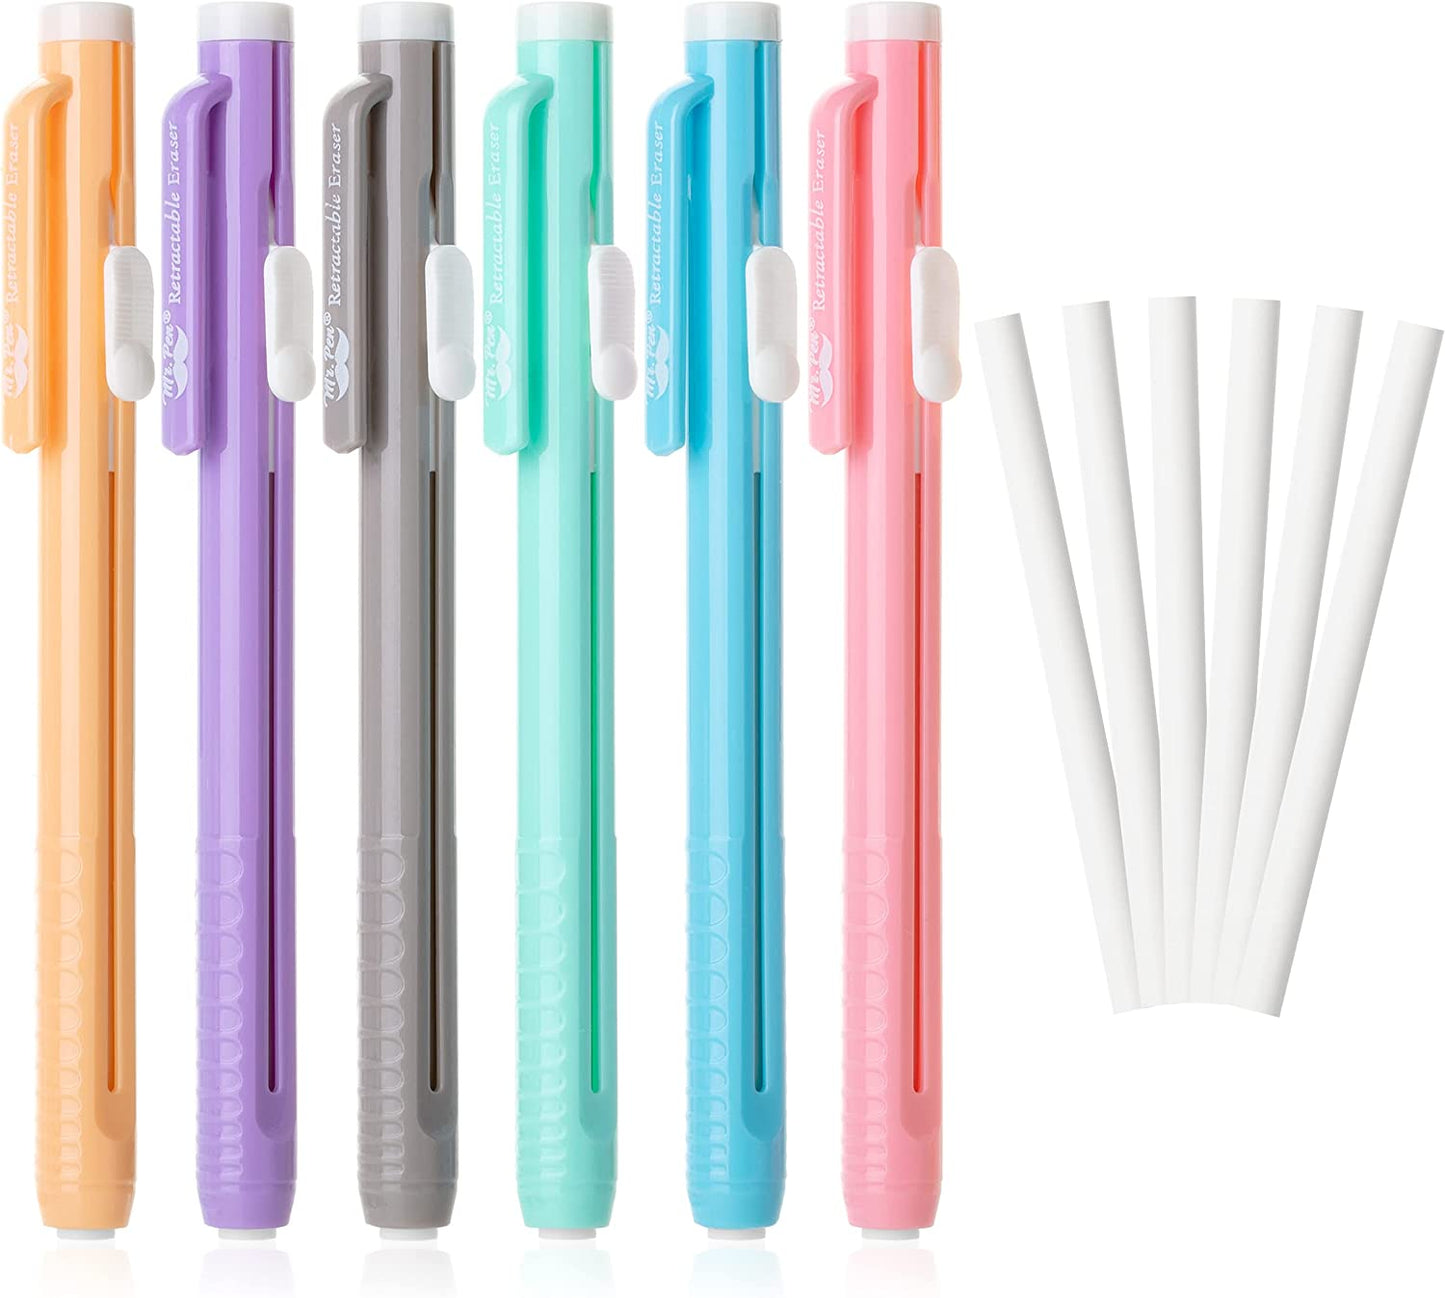 Mr. Pen- Retractable Mechanical Eraser Pen, Pack of 6, Pastel Colors, Pencil Eraser, Eraser for Pencils